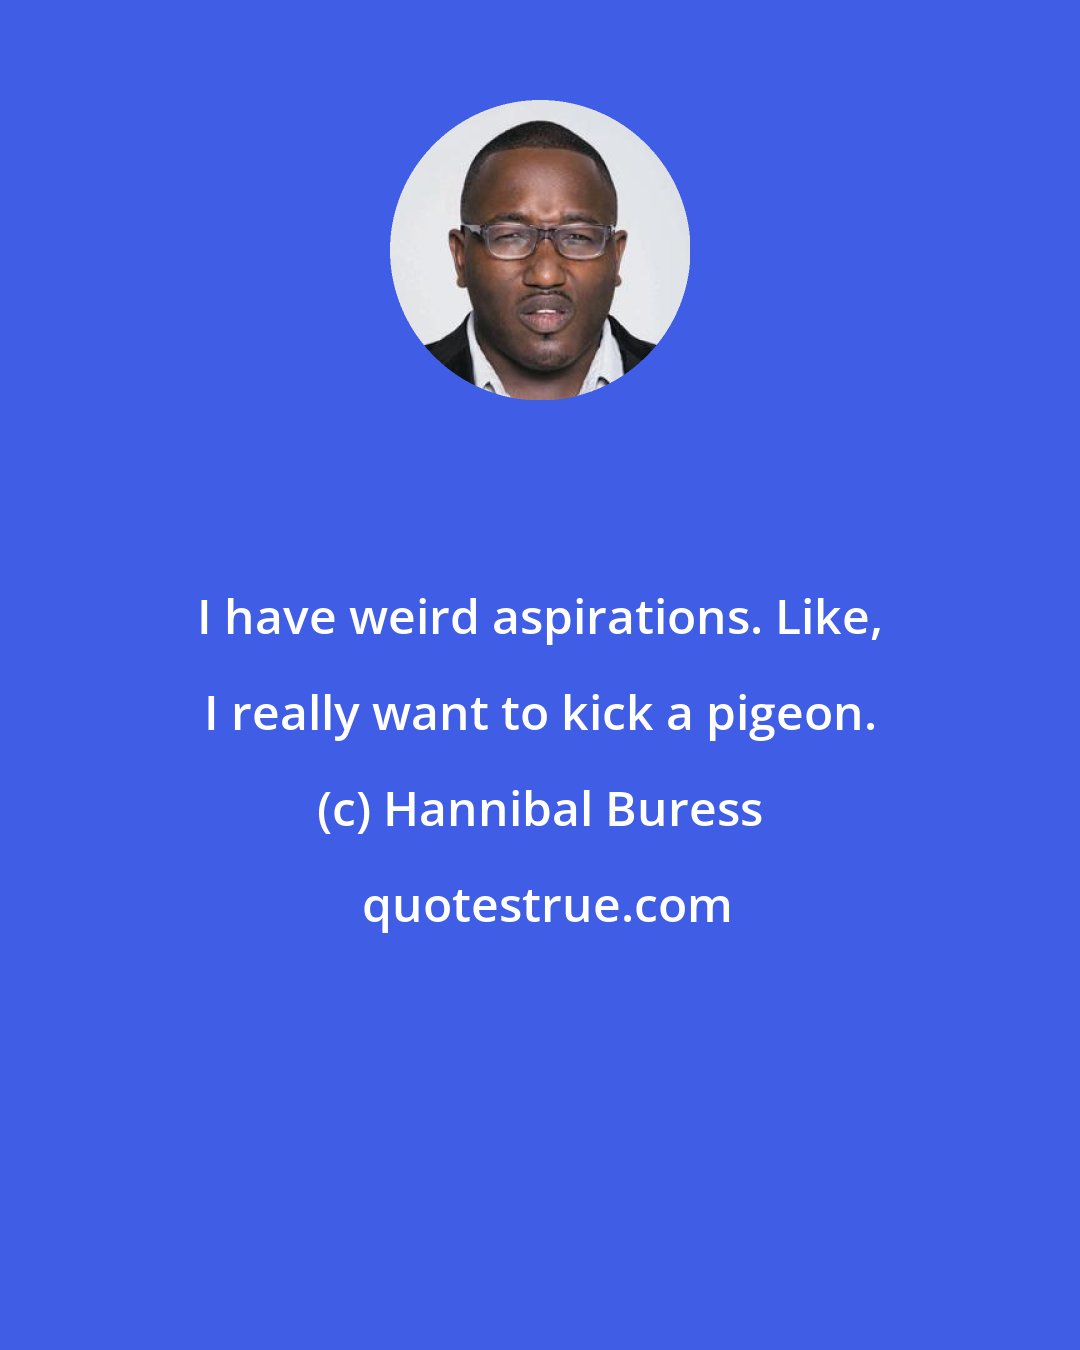 Hannibal Buress: I have weird aspirations. Like, I really want to kick a pigeon.